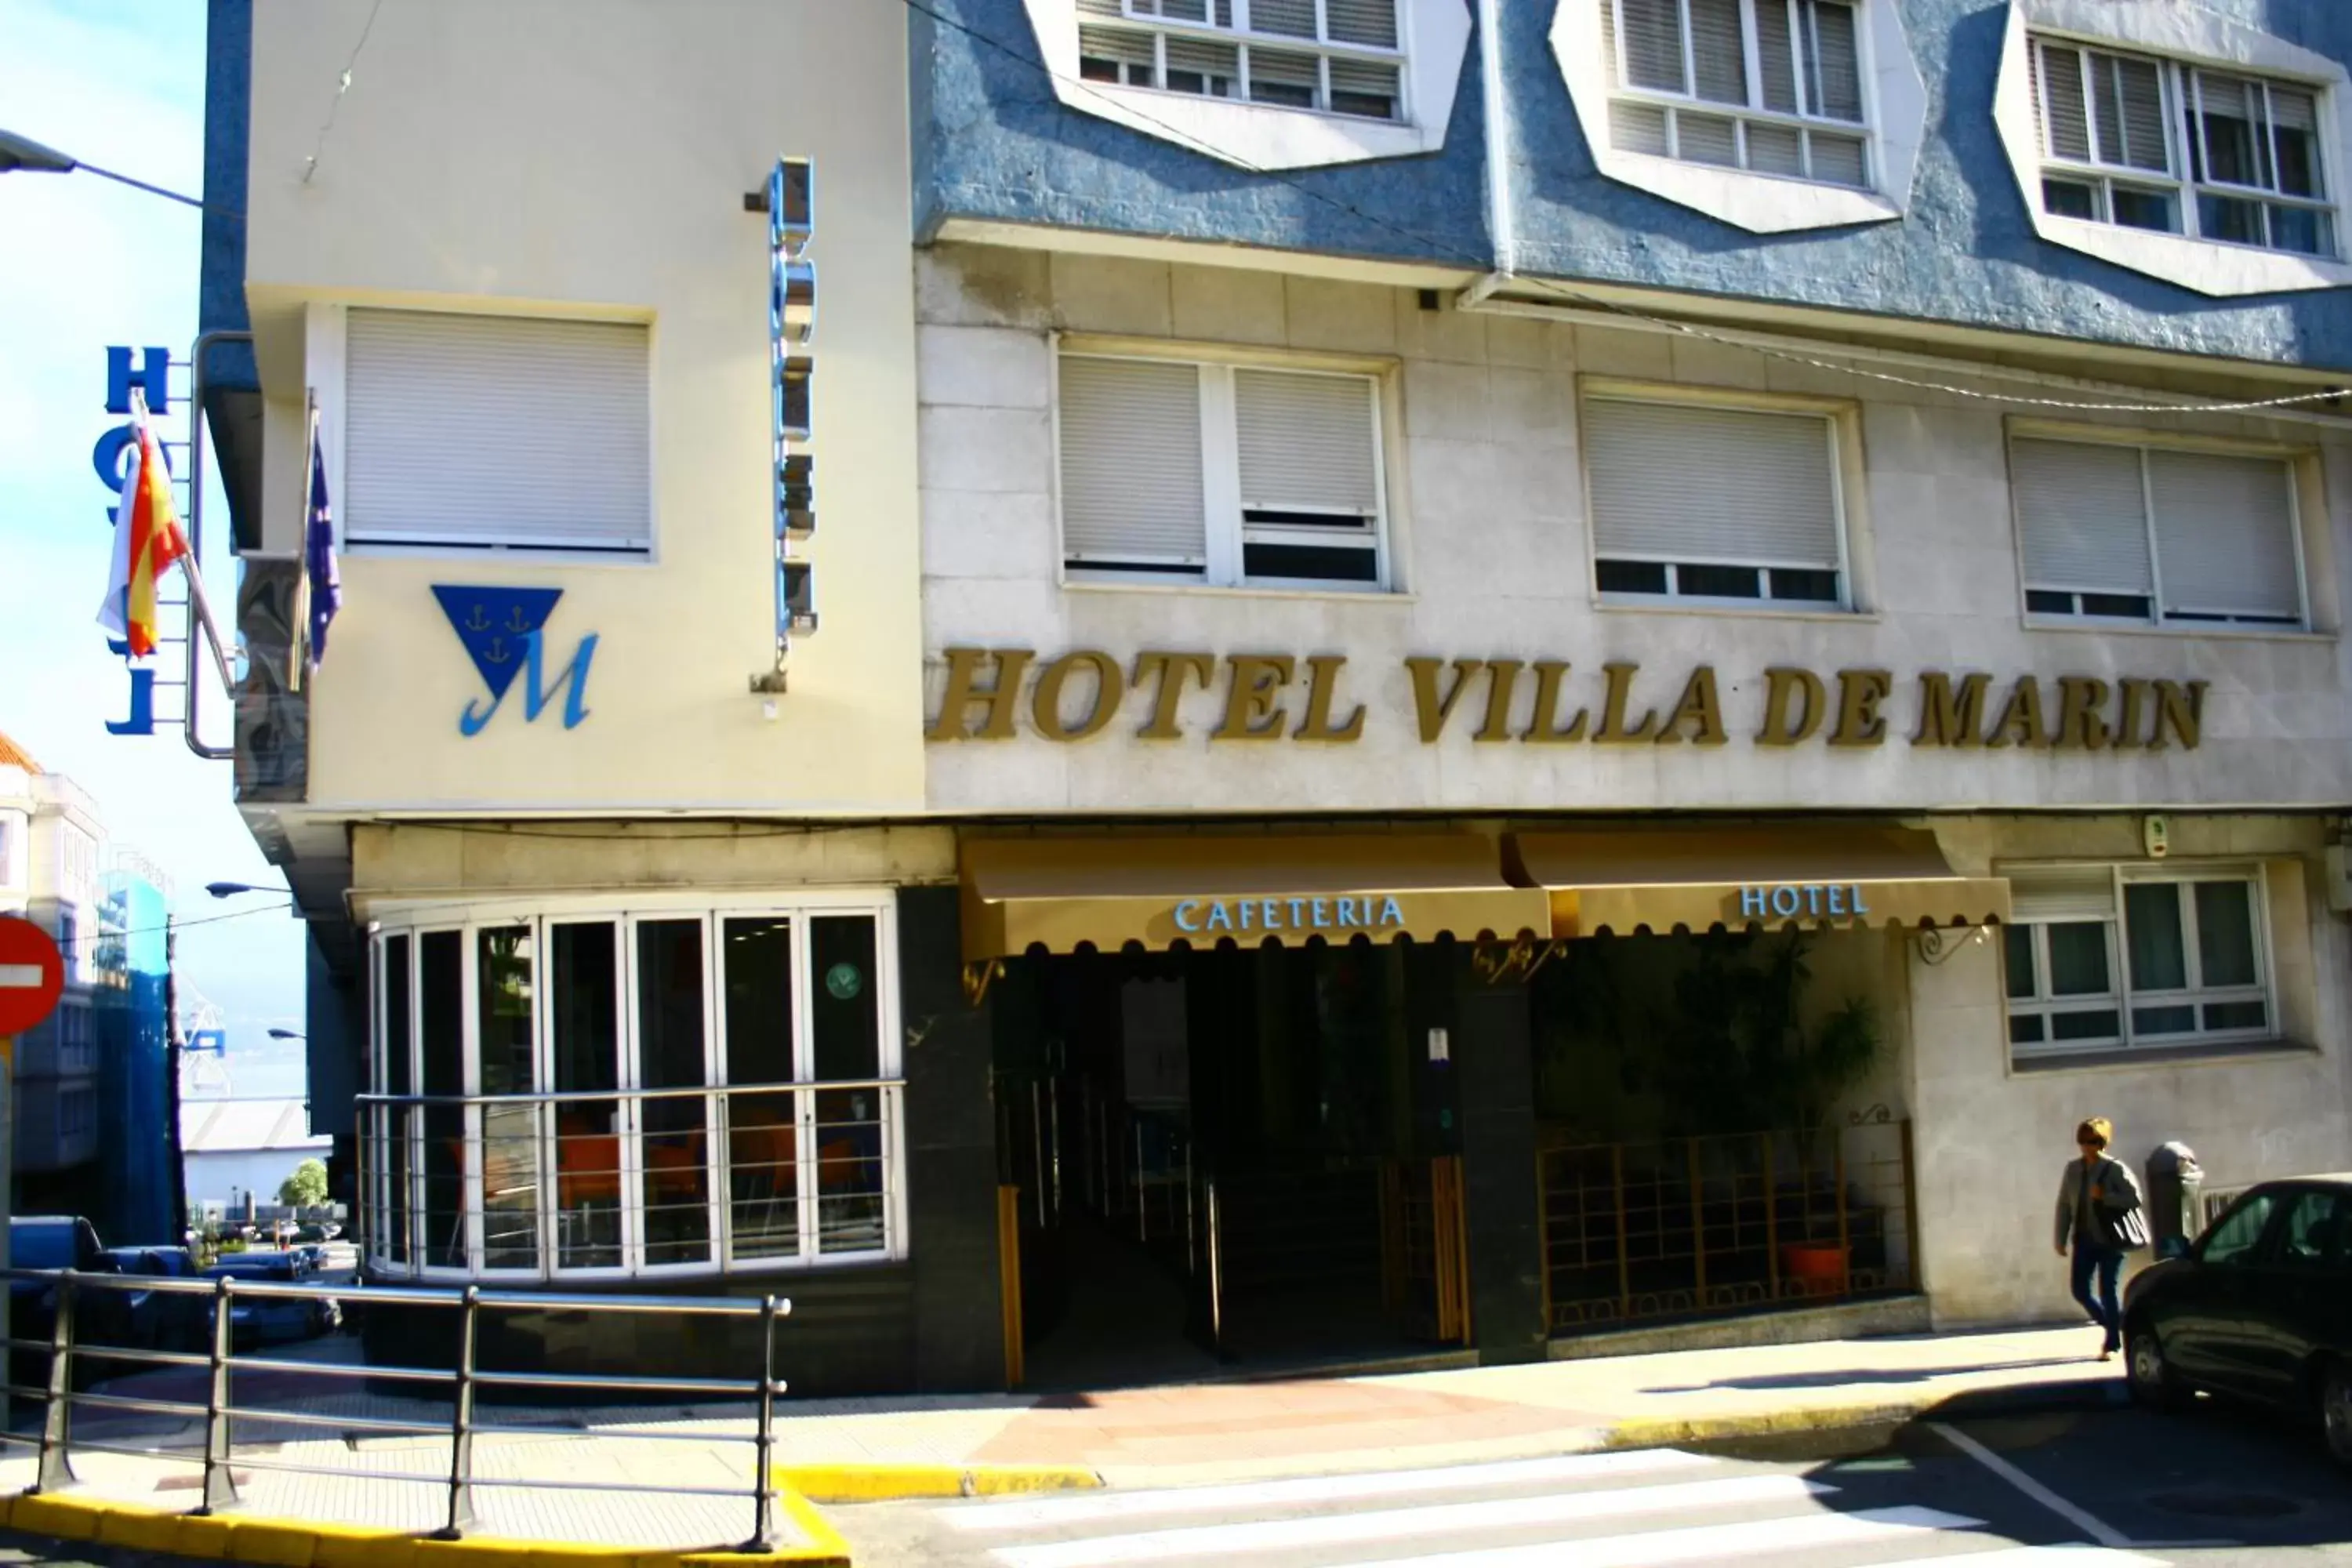 Facade/entrance, Property Building in Hotel Villa de Marin